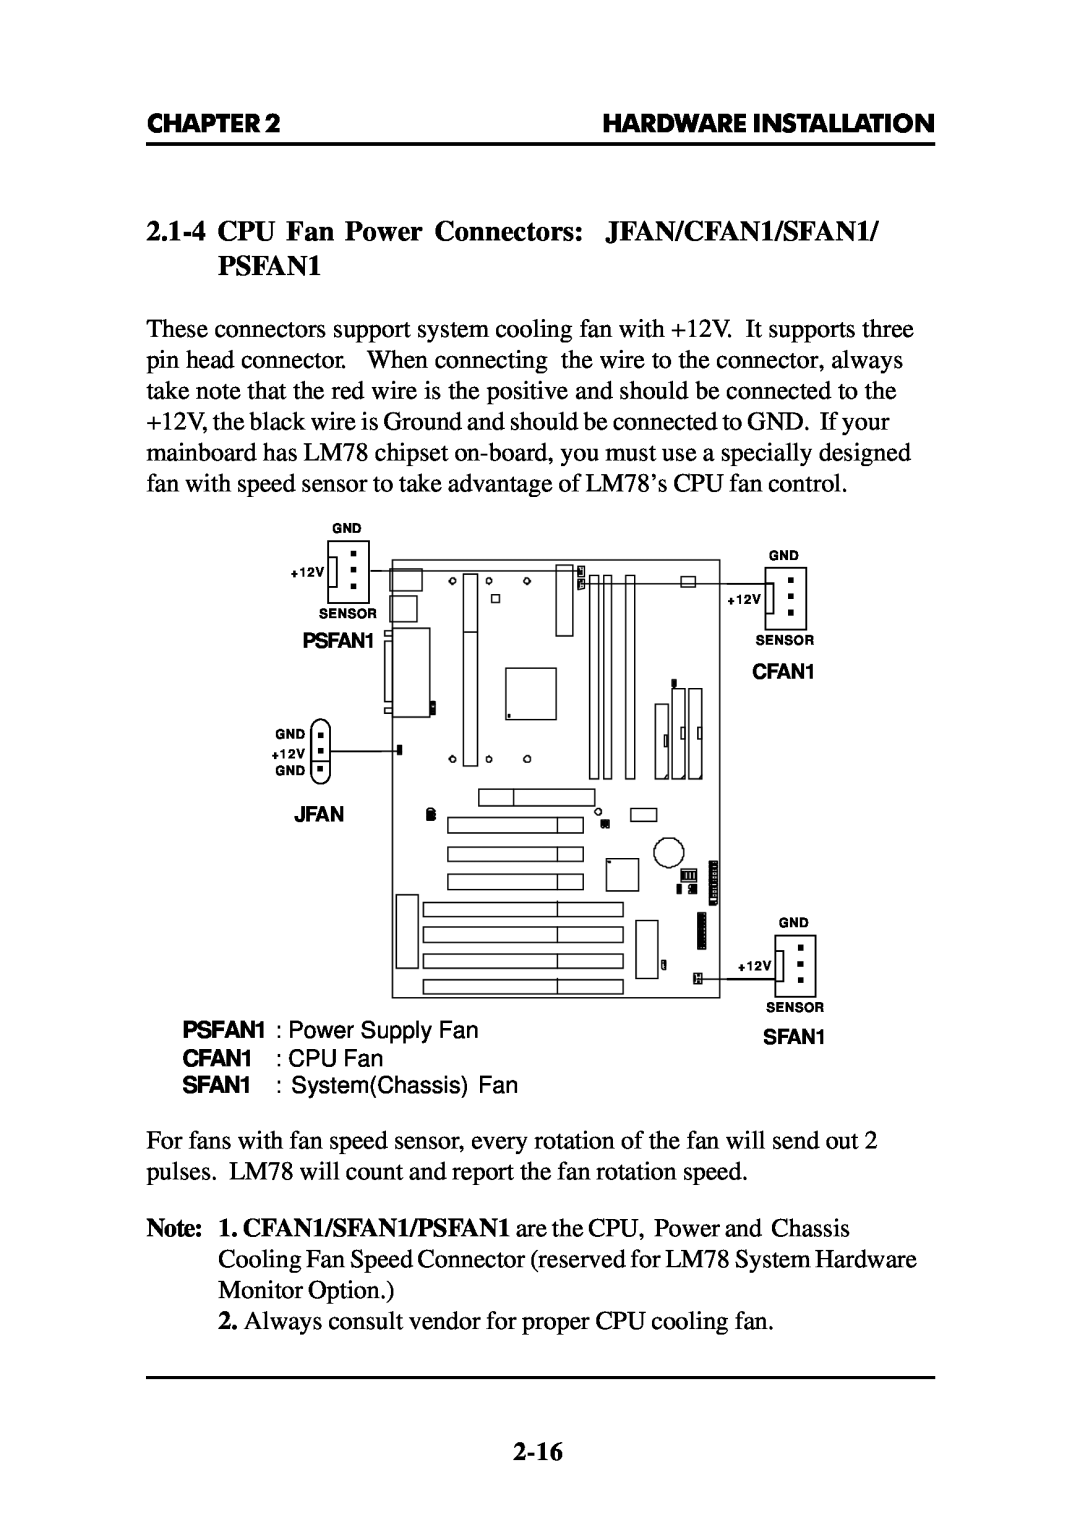 Intel MS-6112 manual 2.1-4CPU Fan Power Connectors JFAN/CFAN1/SFAN1, PSFAN1 